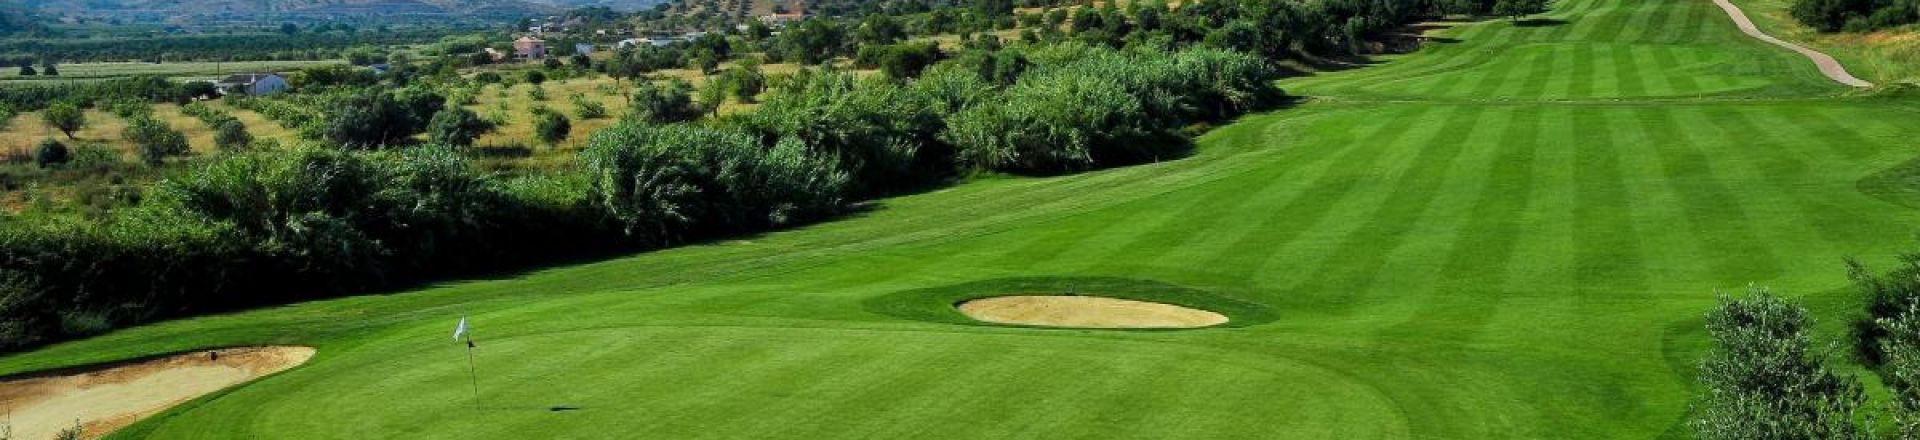 Benamor Golf Course